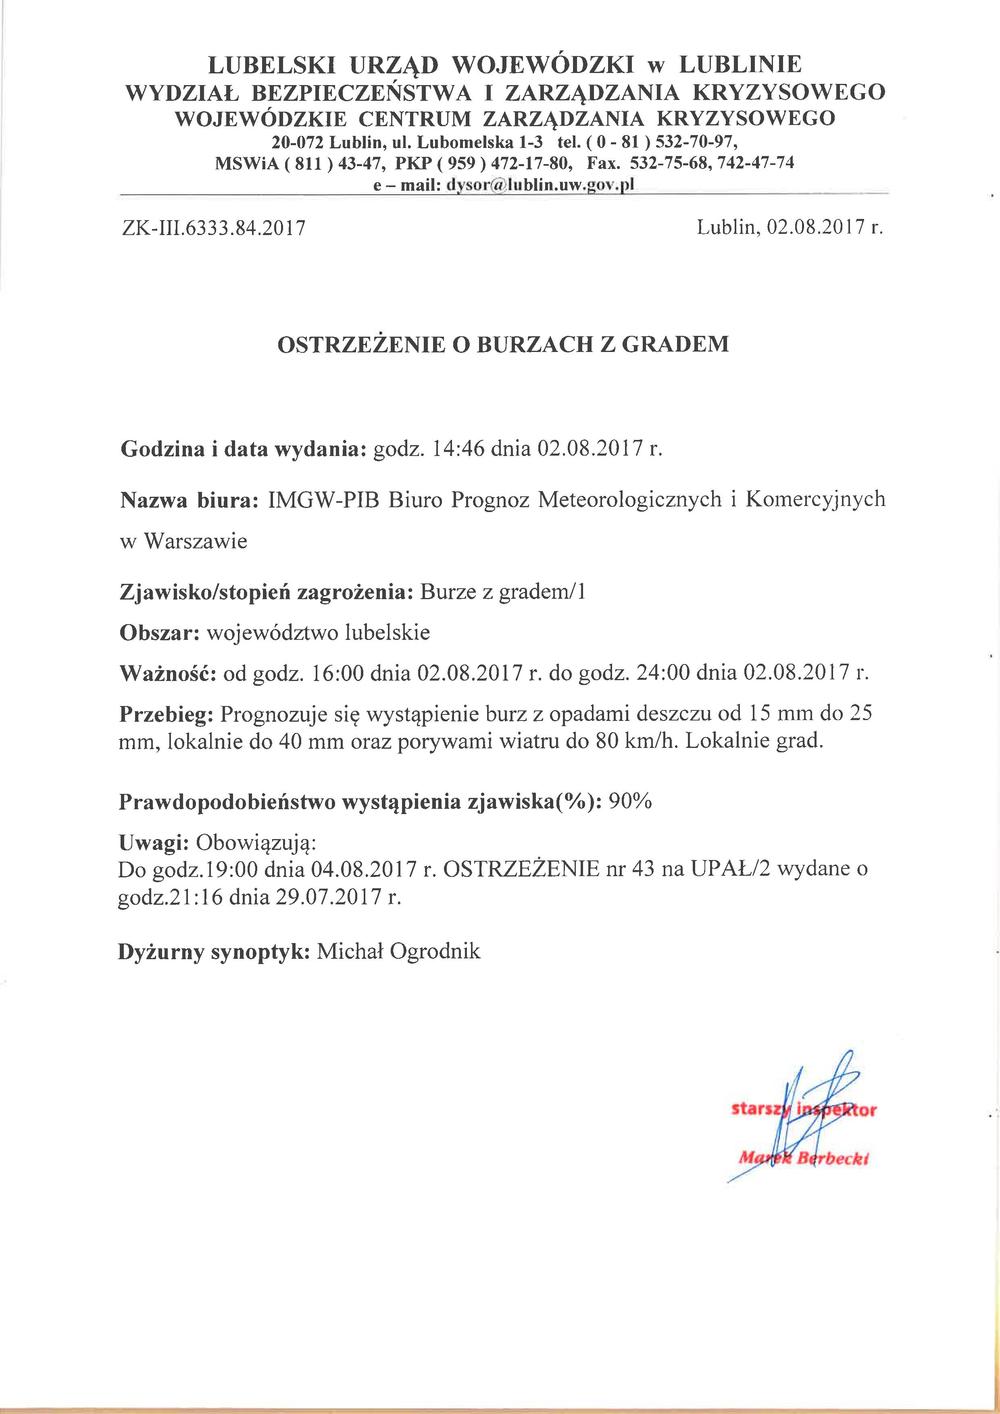 Ostrzeżenie o burzach z gradem z dn. 2.08.2017 r.